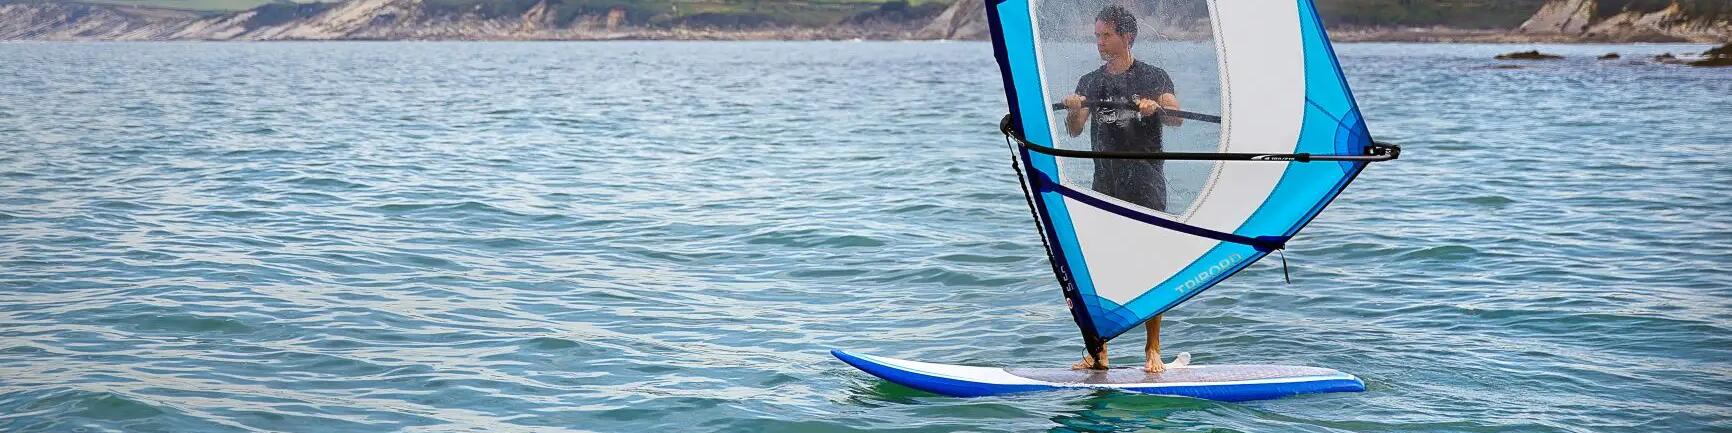 mężczyzna uprawiający windsurfing 